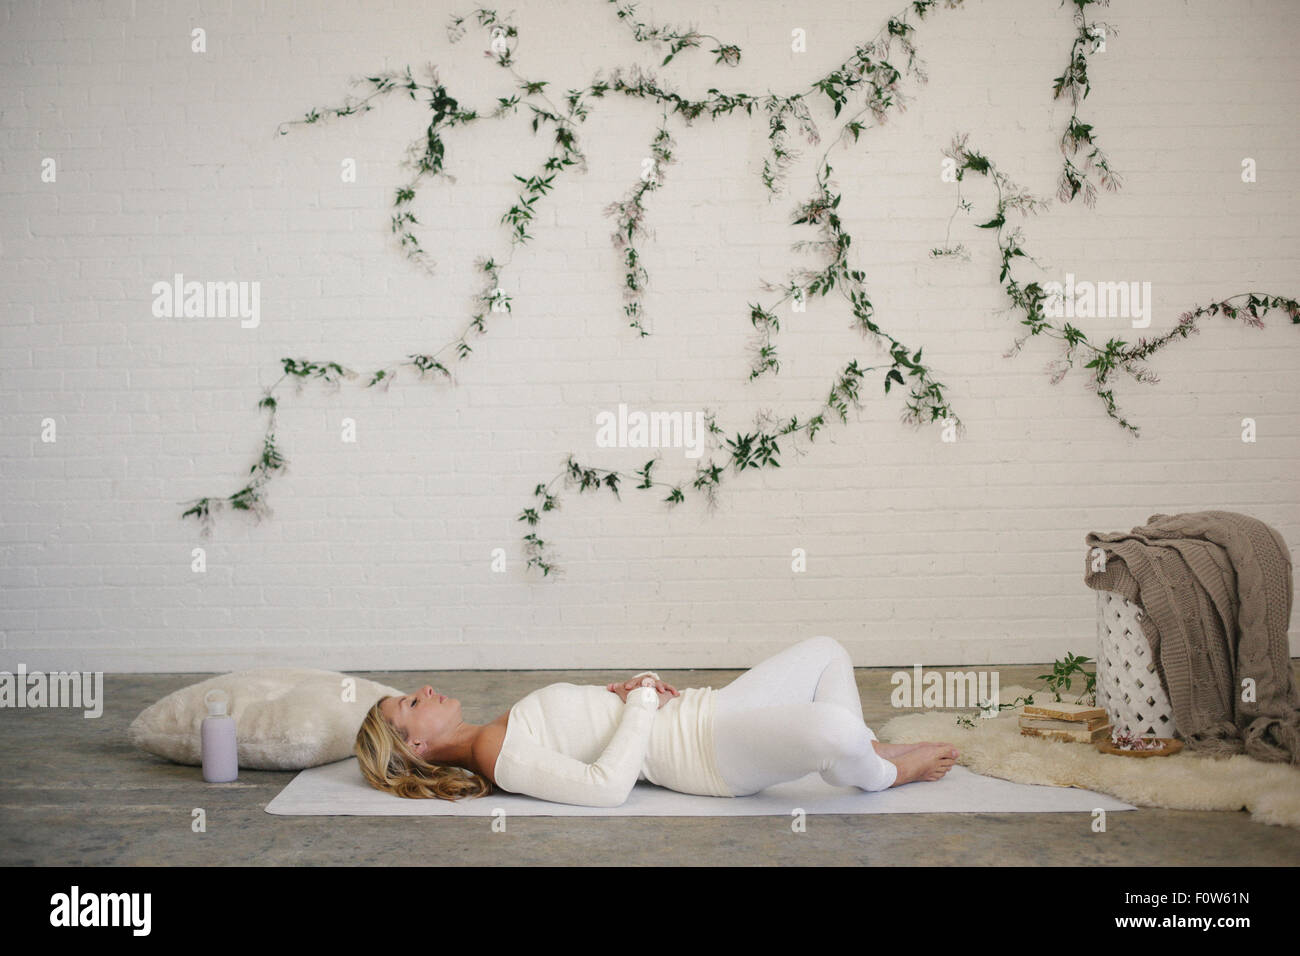 Eine blonde Frau in einem weißen Trikot und Leggings, liegend auf einer weißen Matte in einem Raum. Eine Schlingpflanze Pflanze an der Wand hinter ihr. Stockfoto